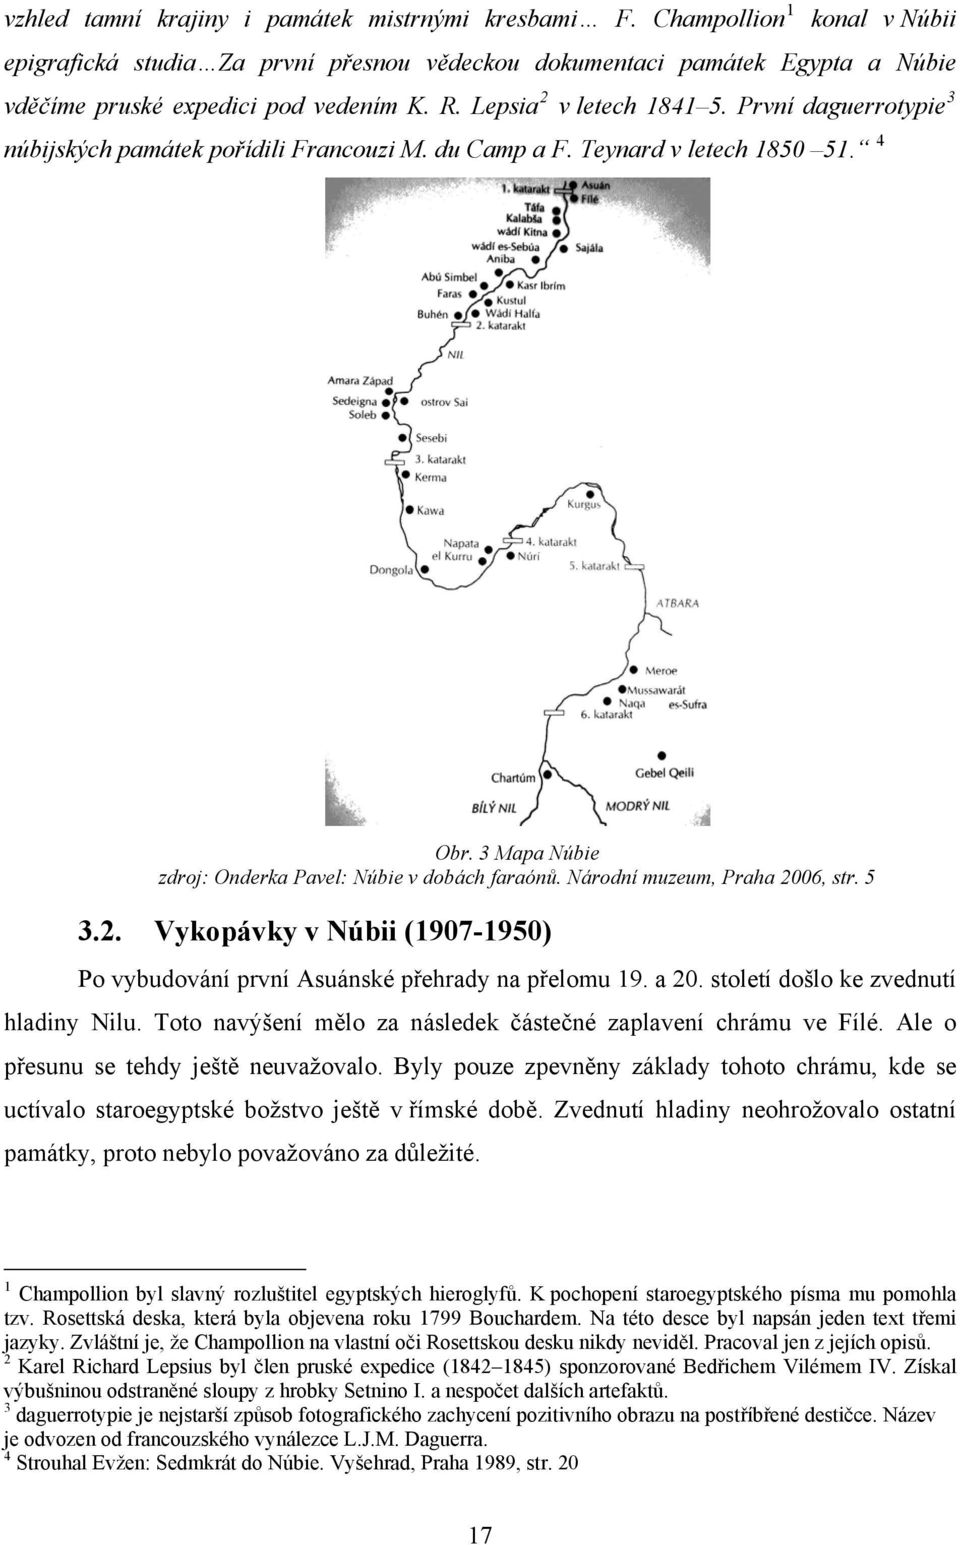 Národní muzeum, Praha 2006, str. 5 3.2. Vykopávky v Núbii (1907-1950) Po vybudování první Asuánské přehrady na přelomu 19. a 20. století došlo ke zvednutí hladiny Nilu.